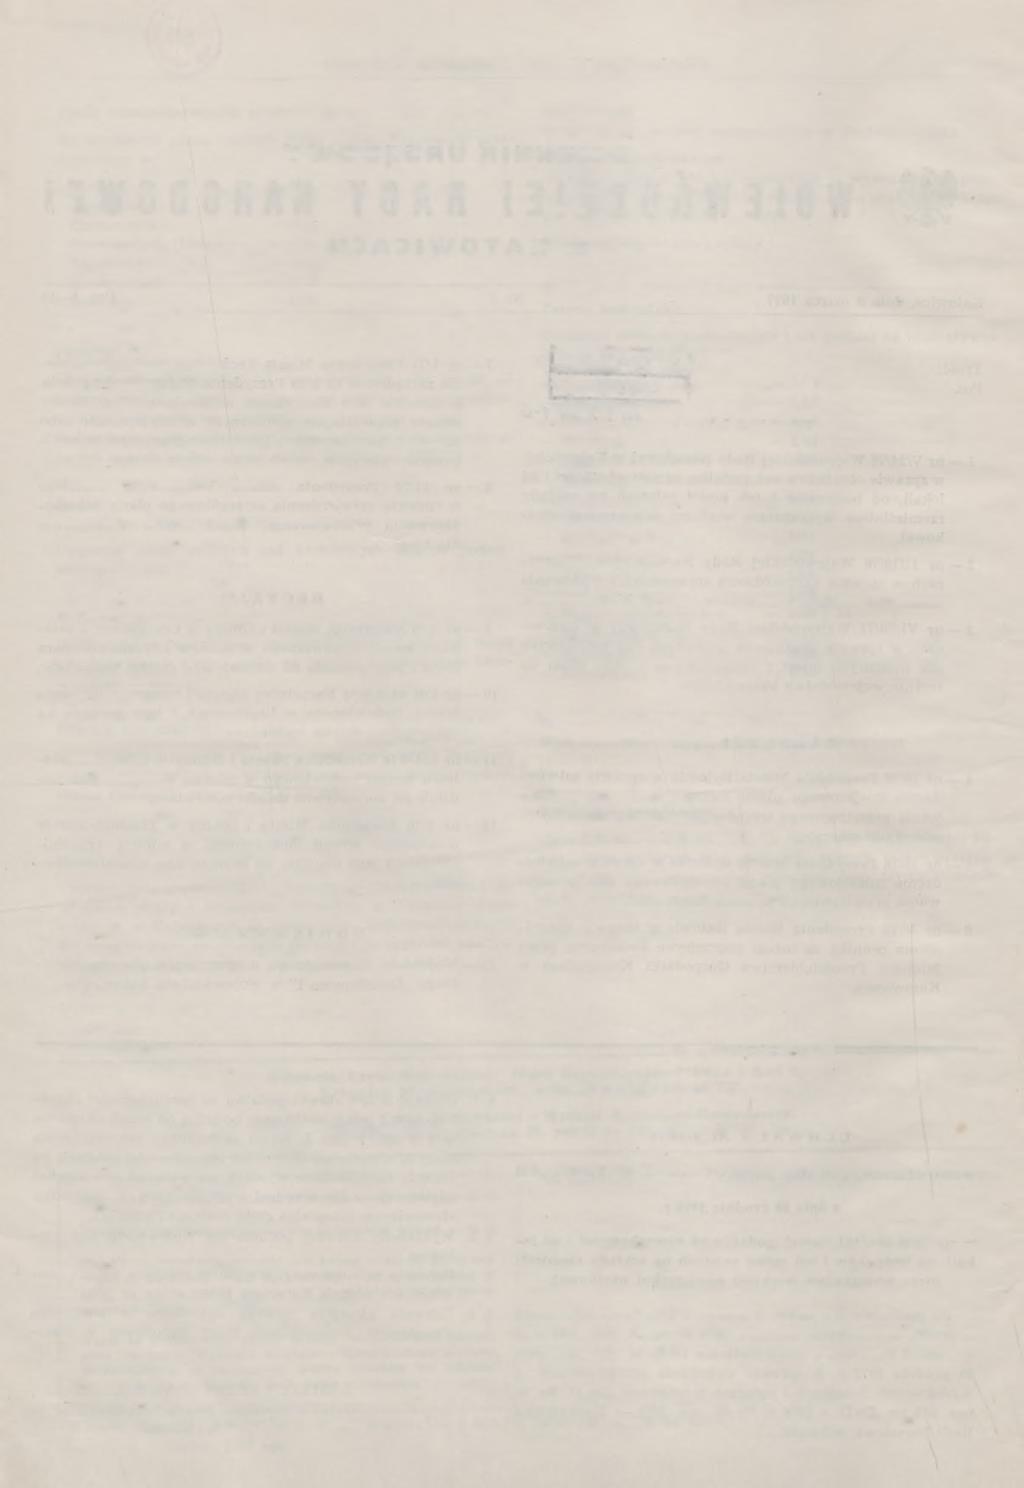 2 DZIĘNNIK URZĘDOWY WRN W KATOWICACH Załącznik do uchwały Nr V/24/76 Wojewódzkiej Rady Narodowej z dnia 28 grudnia 1976 Wykaz rzemiosł objętych obniżką podatku od nieruchomości i od lokali Rzemiosła